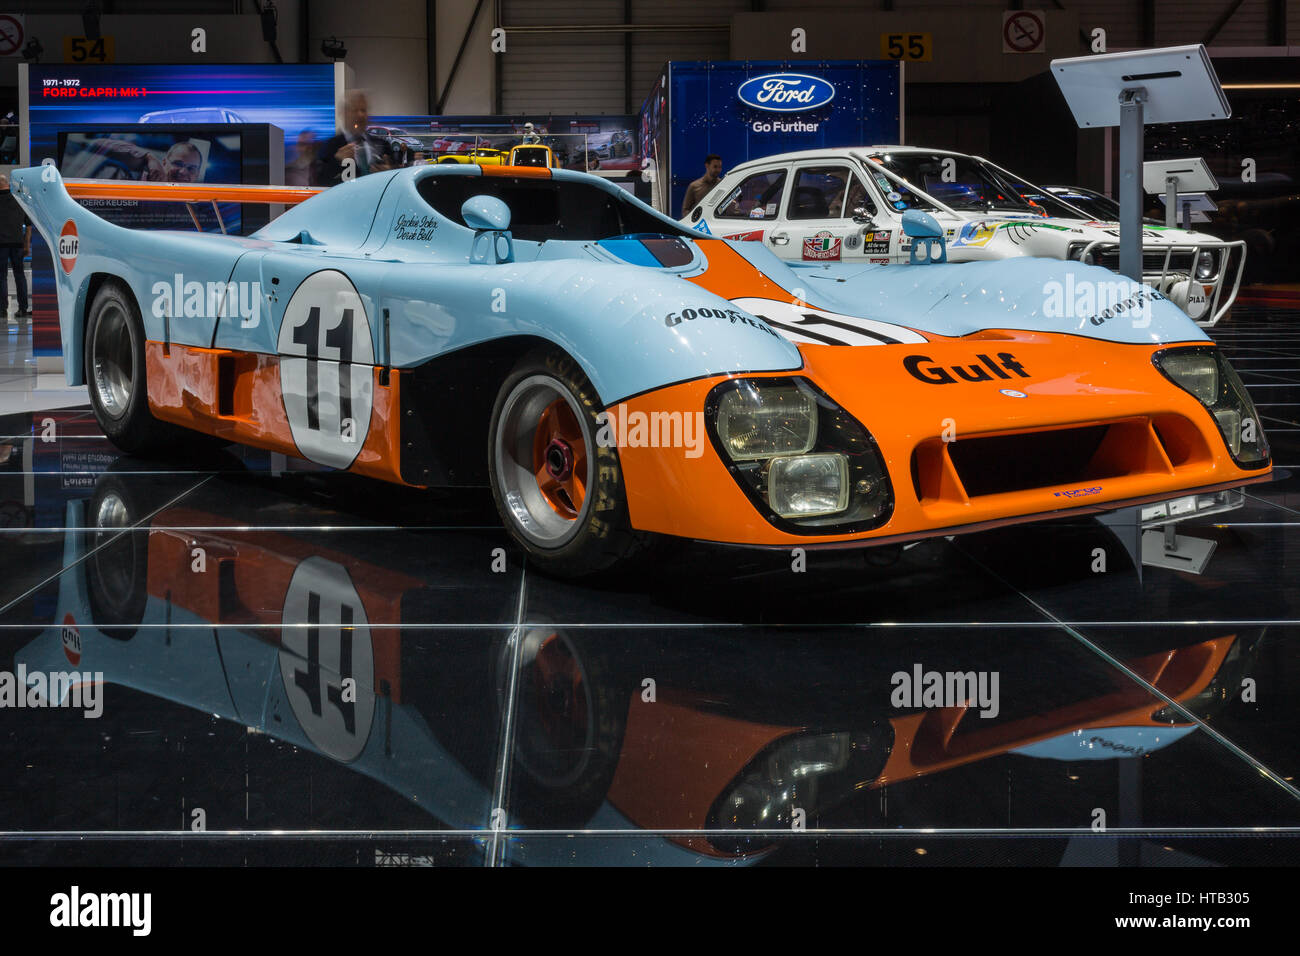 Der Porsche 917 von Jacky Ickx und Derek Bell blau und orange Golf Farbe  Stockfotografie - Alamy